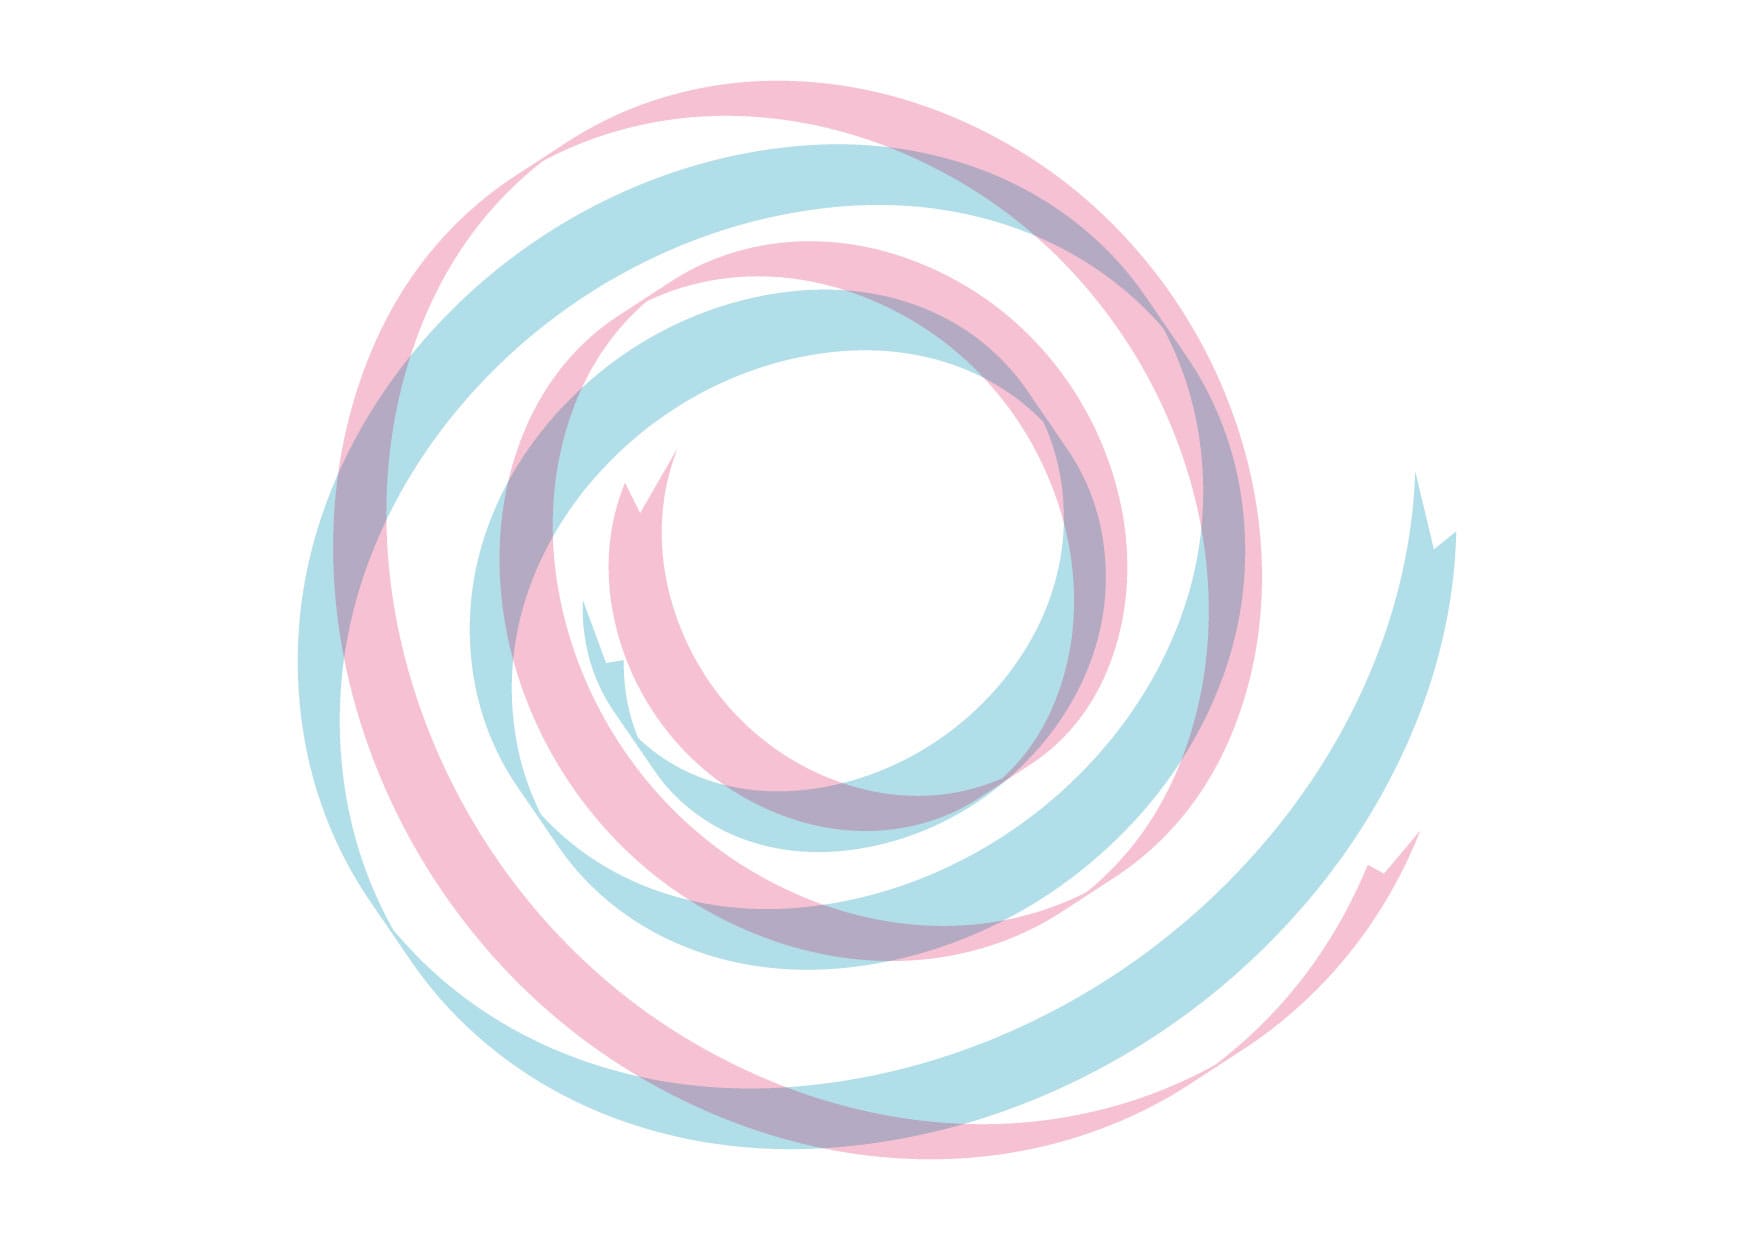 可愛いイラスト無料 リボン 背景 カール ピンク色 青色 Free Illustration Ribbon Background Curl Pink Blue 公式 イラスト素材サイト イラストダウンロード